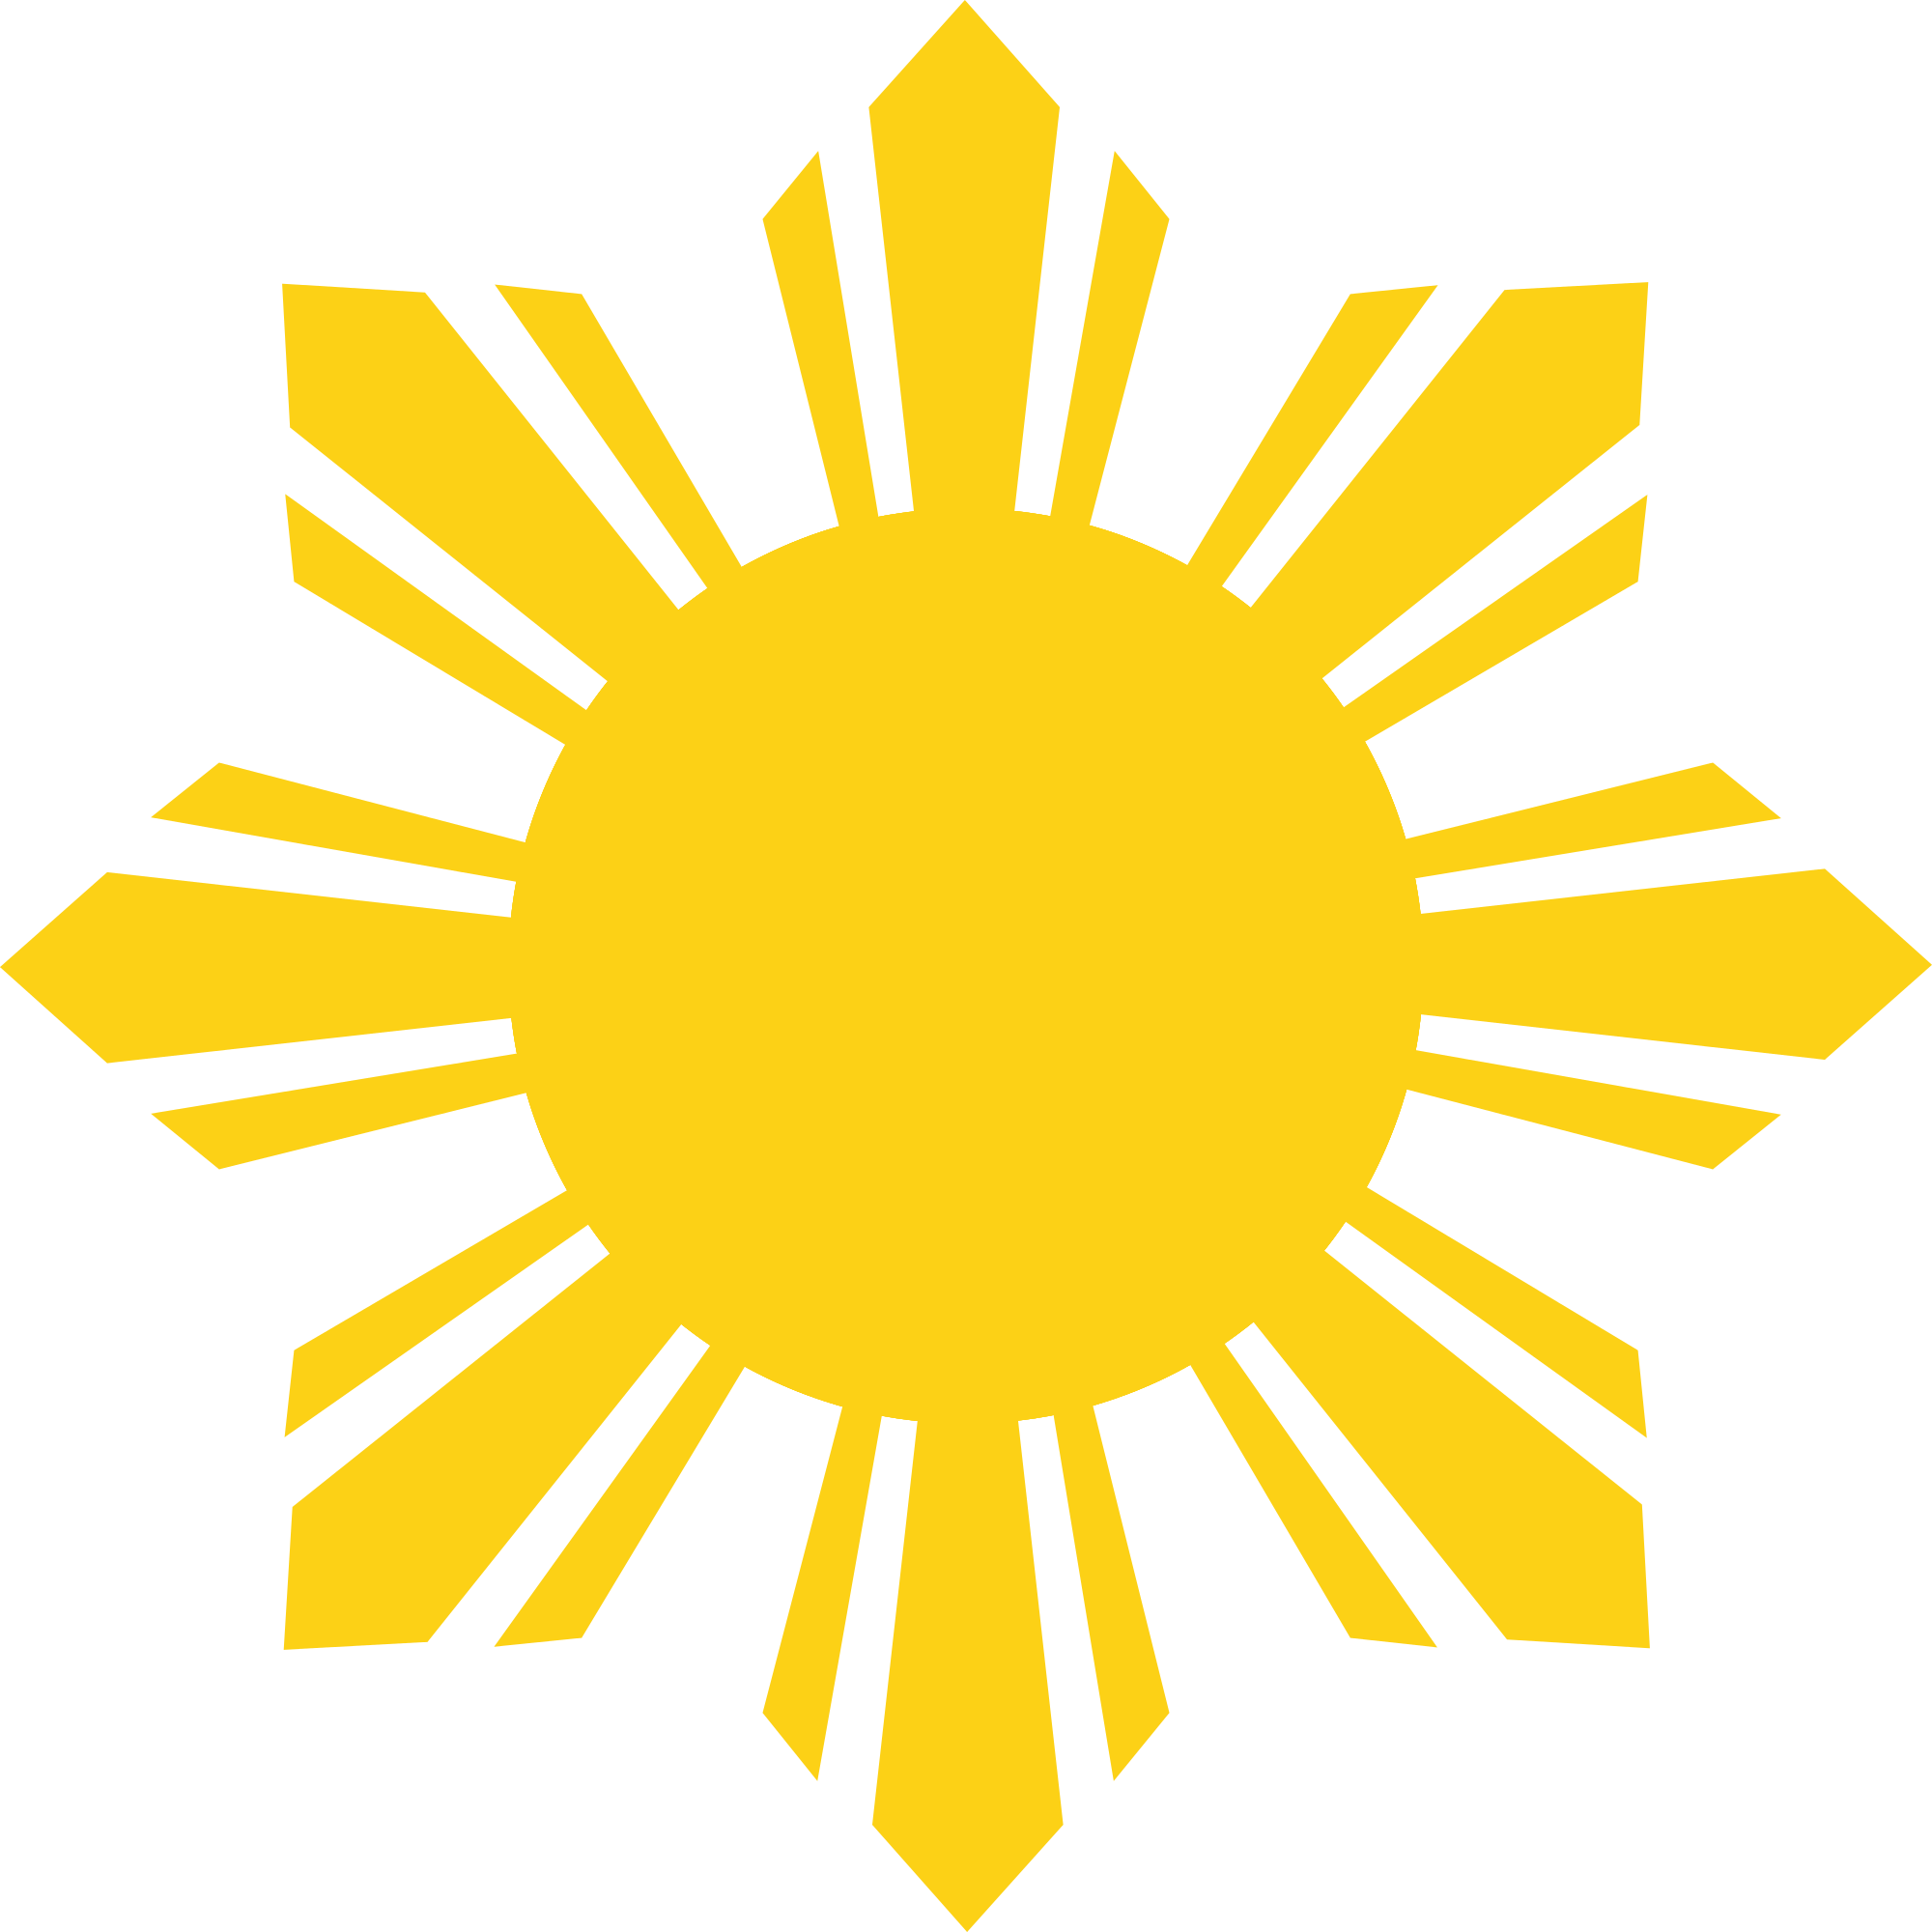 Philippines Sun Symbols - ClipArt Best